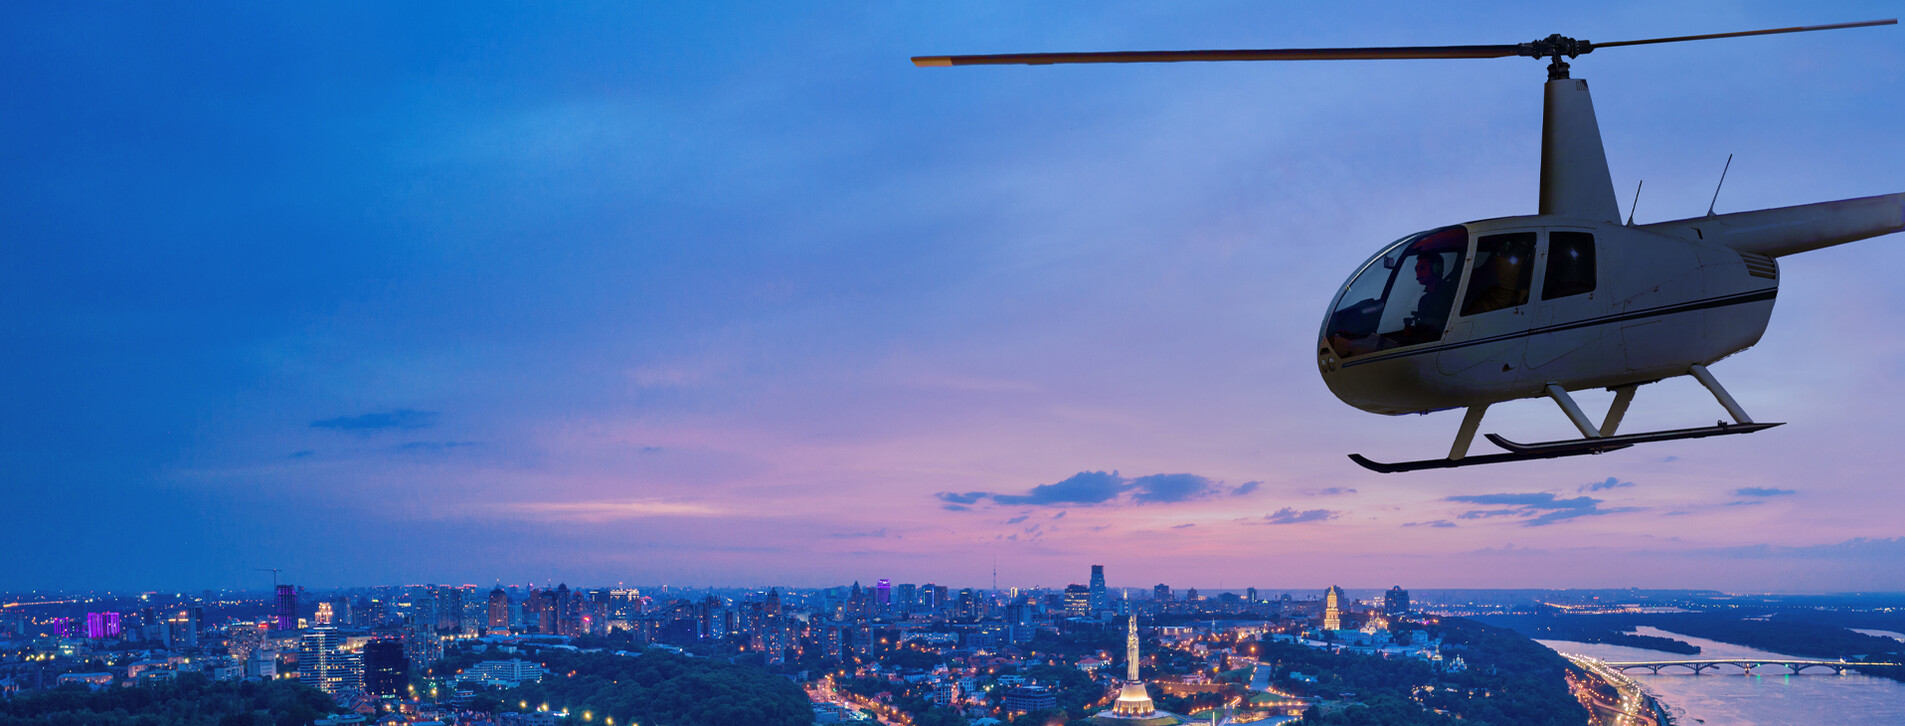 Фото 1 - Політ на вертольоті над нічним Києвом для компанії